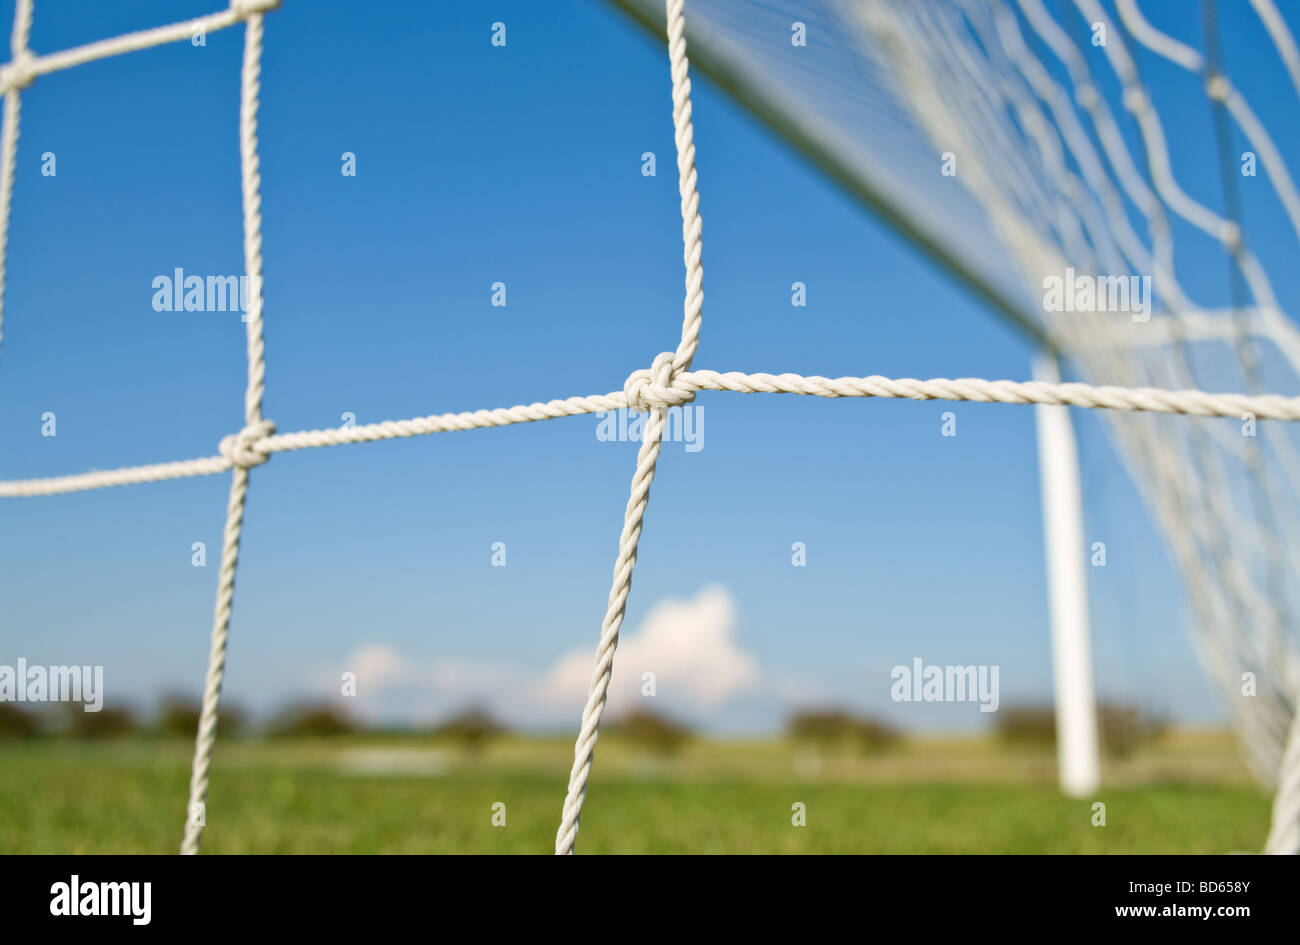 Soccer goal net against blue sky Stock Photo